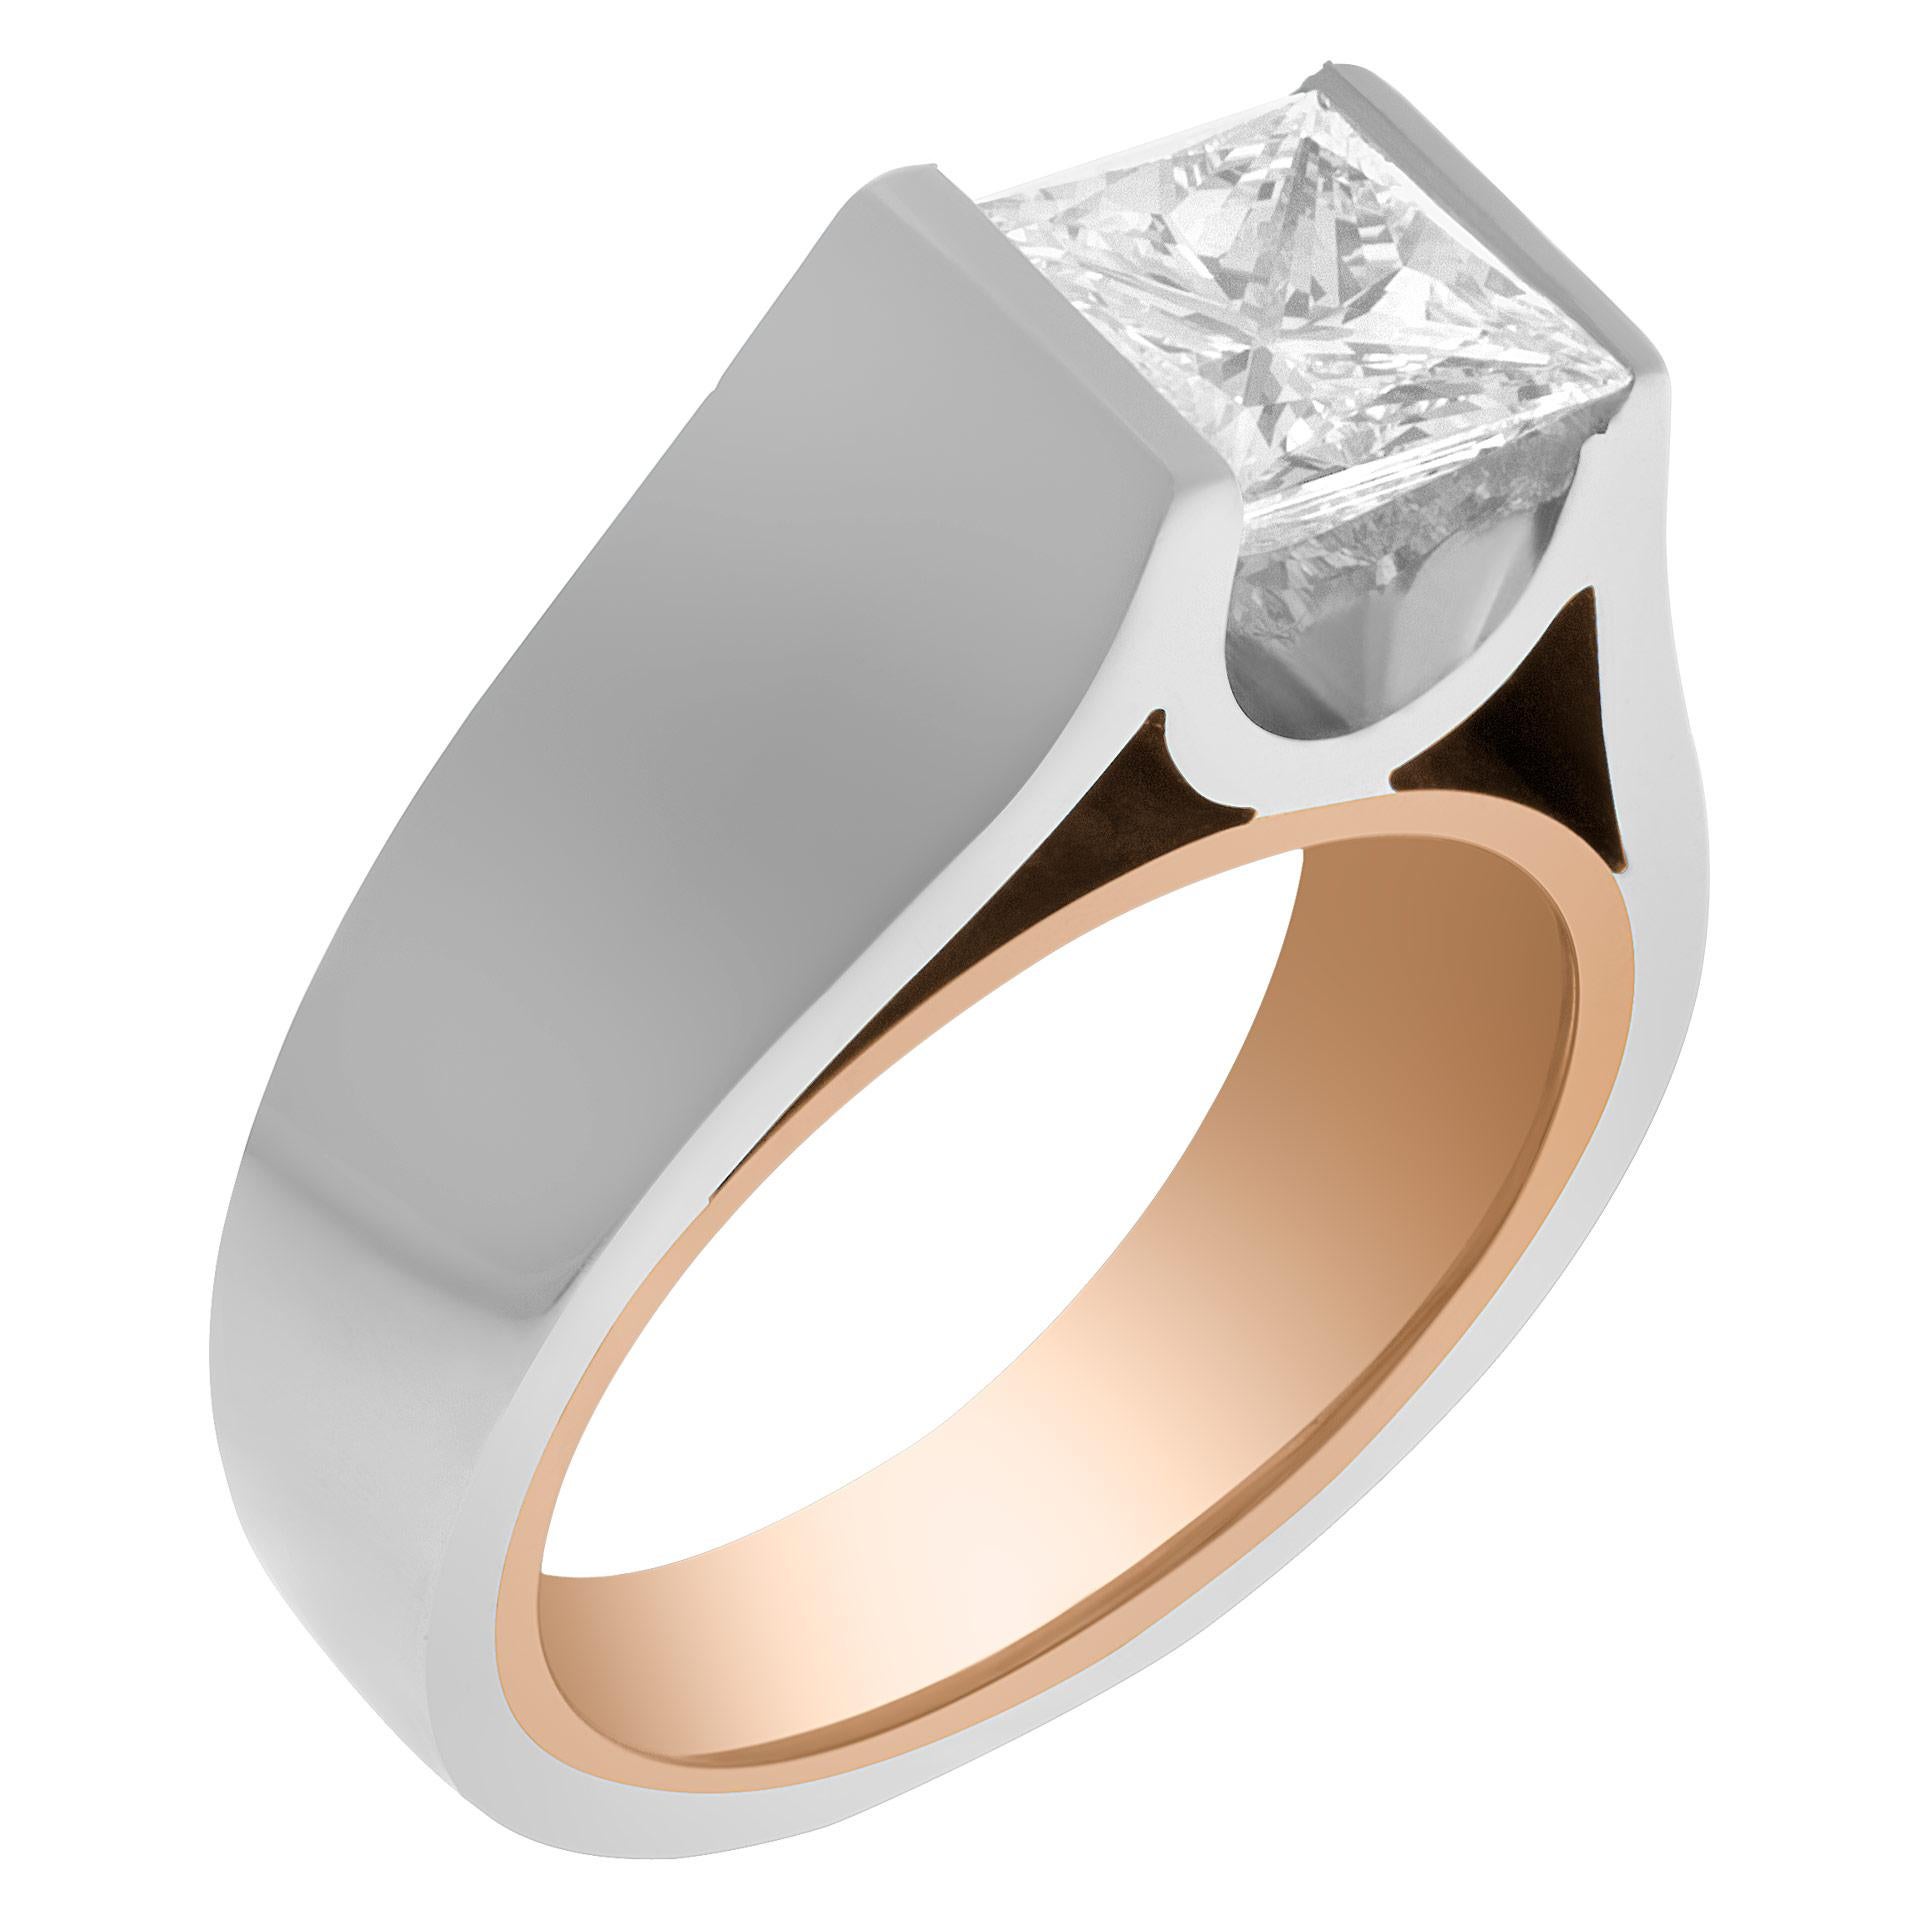 GIA-Bericht zertifiziert rechteckigen modifizierten Brillantschliff Diamanten 1,49 Karat (H Farbe, VS2 Klarheit) Ring in schweren Einstellung in 18k Weiß-und Gelbgold gesetzt. Größe 5 und 3,5 mm am Schenkel. Dieser GIA-zertifizierte Ring hat derzeit